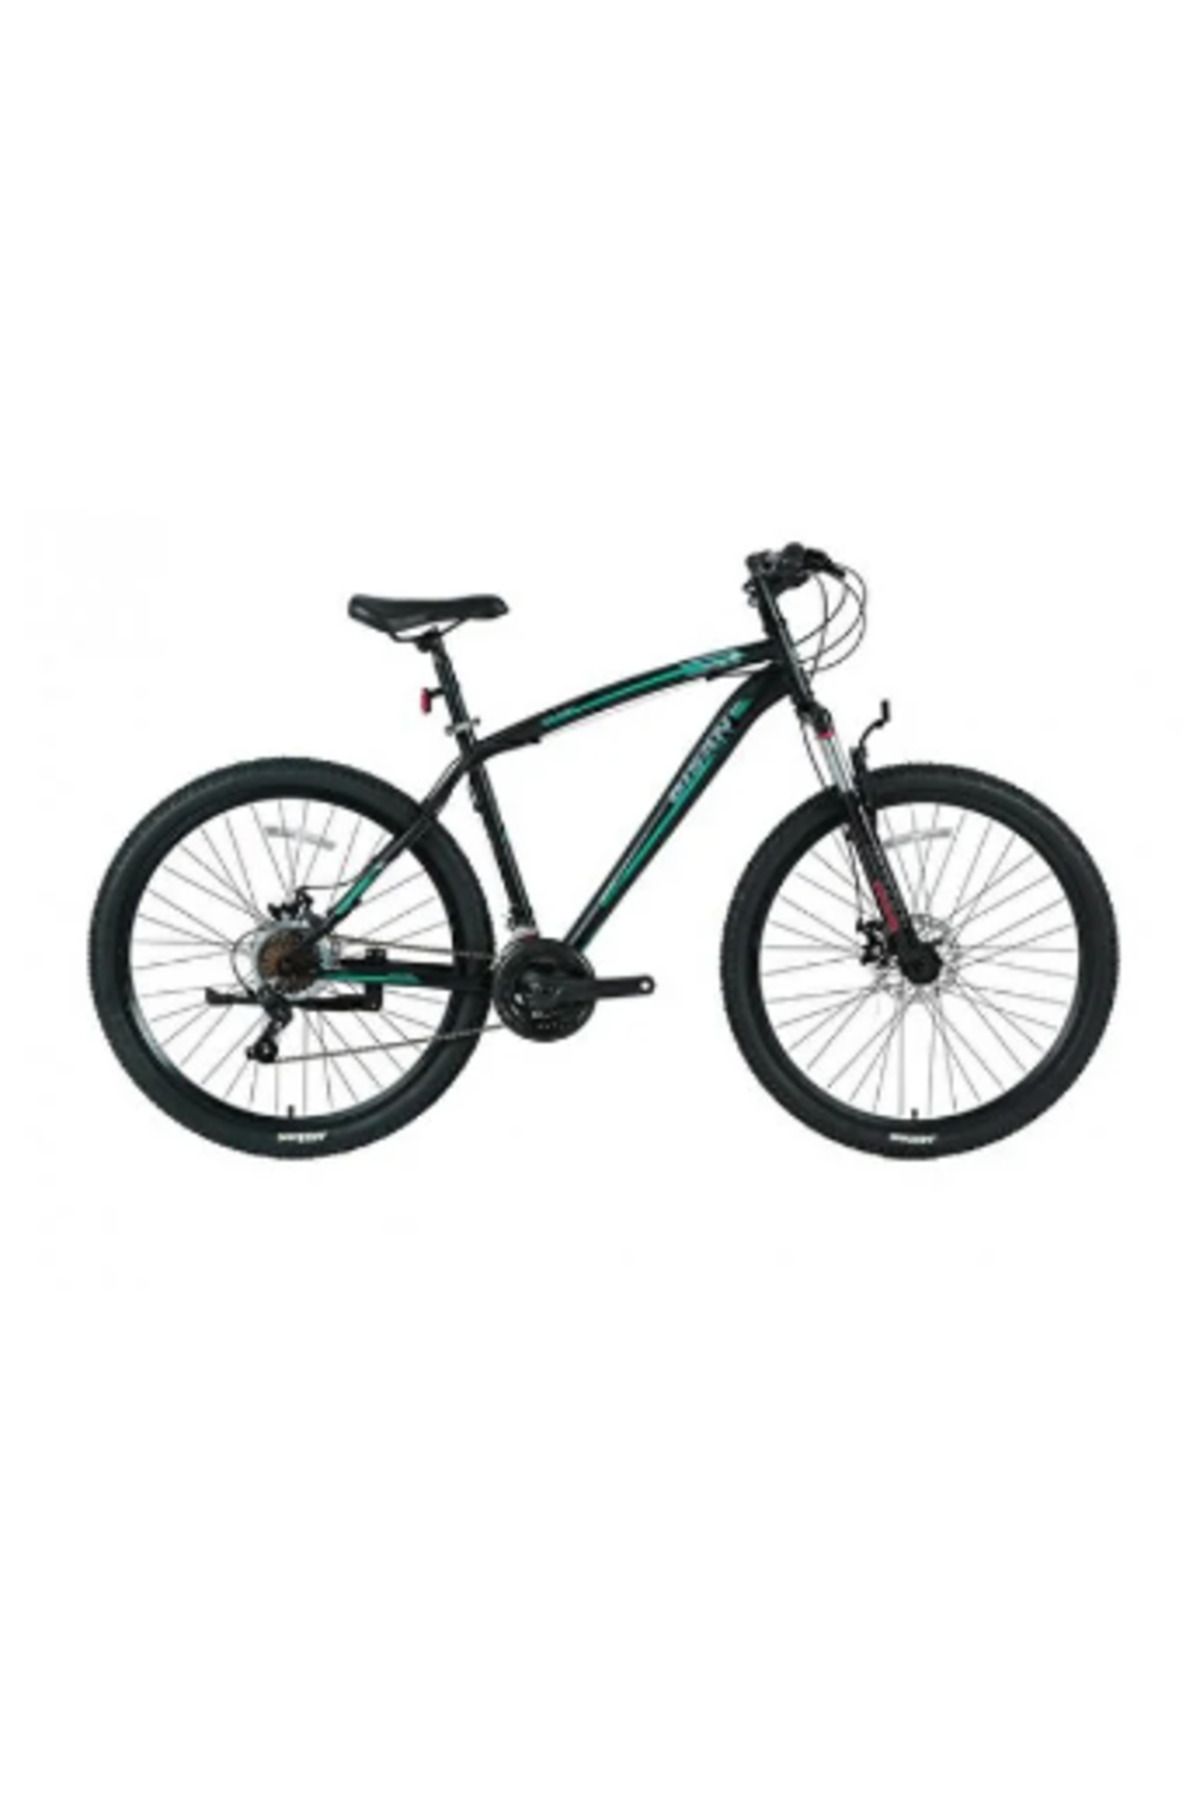 Bisan Mts 4600 Md-23 24 Jant Bisiklet Mat Siyah Yeşil